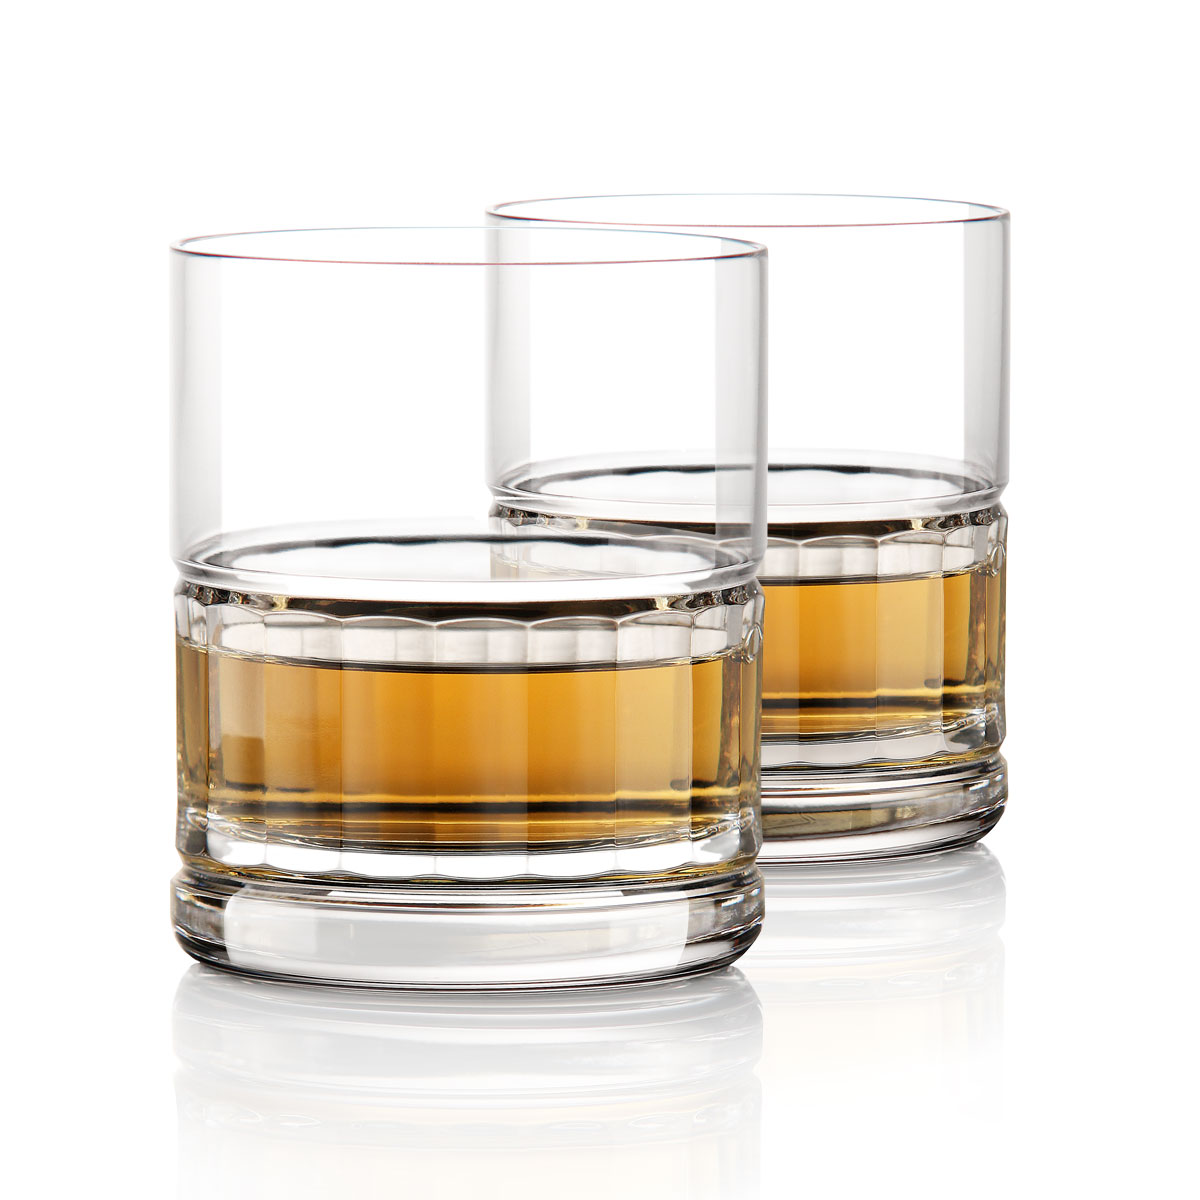 Cashs Ireland Dunloe Irish Whiskey DOF Glass, Pair